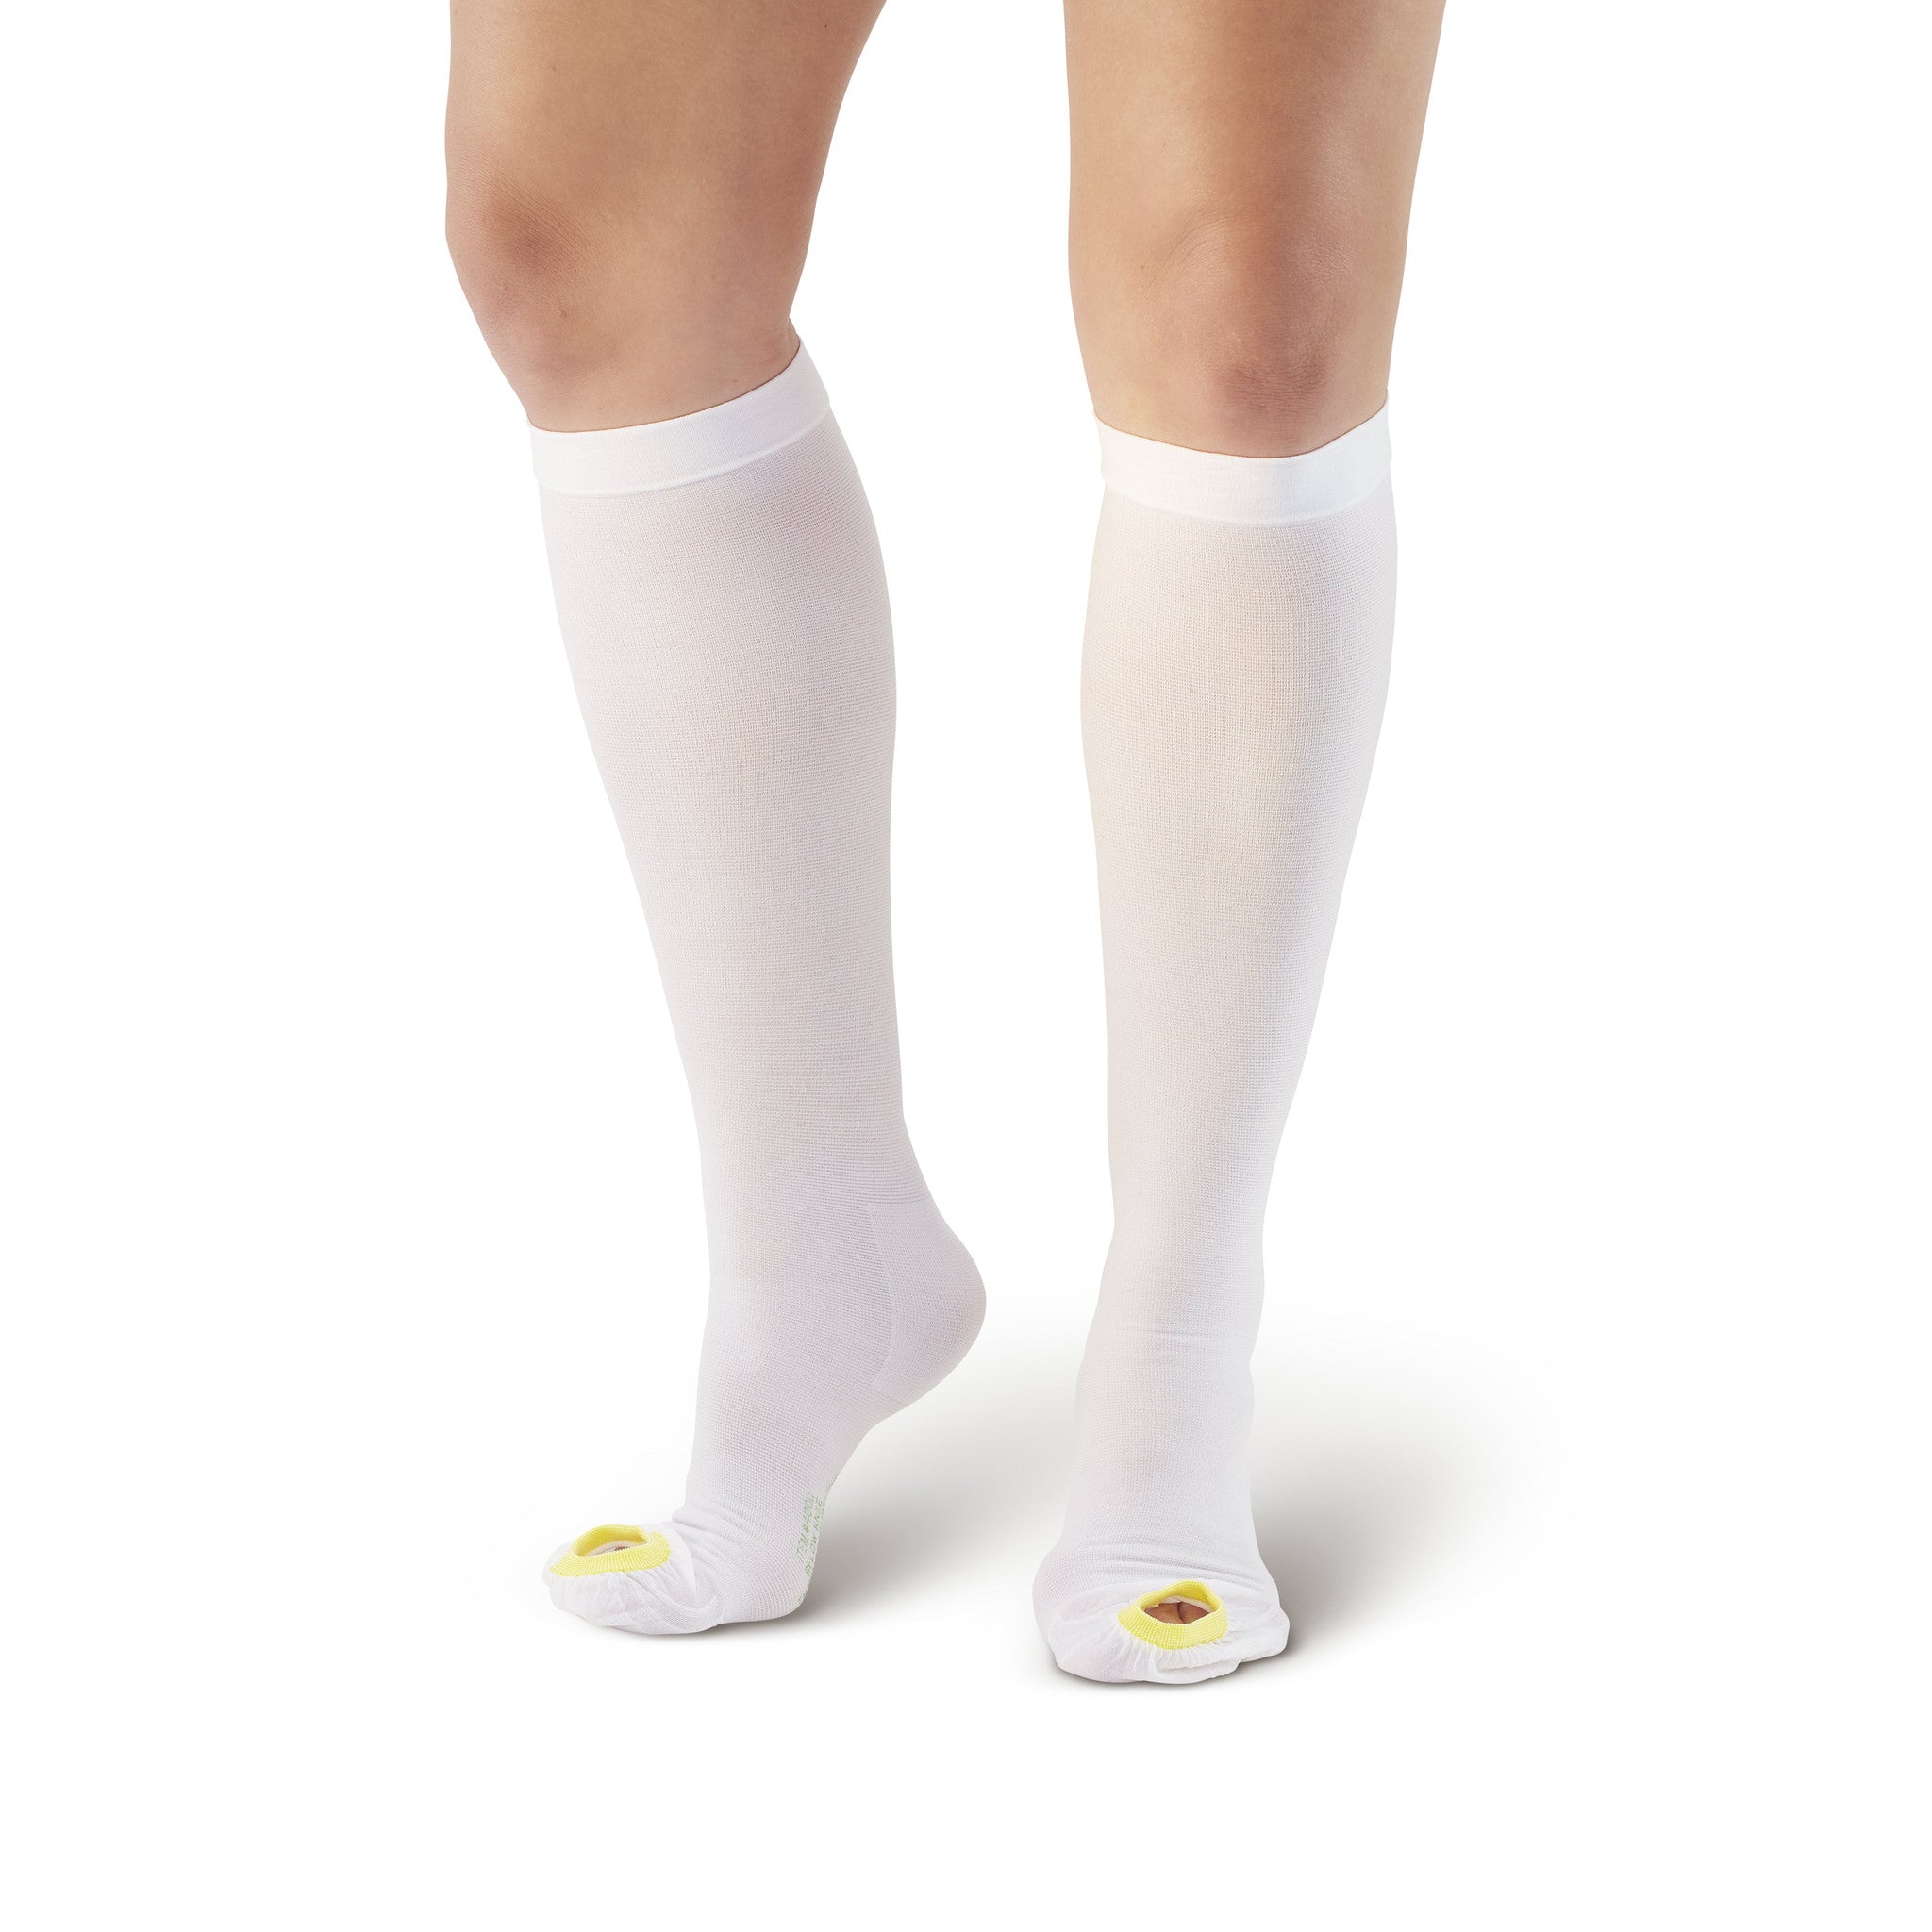 Lifespan Anti-Embolism Stockings, Knee High, Large/Regular, White,  Inspection Toe, #553-03